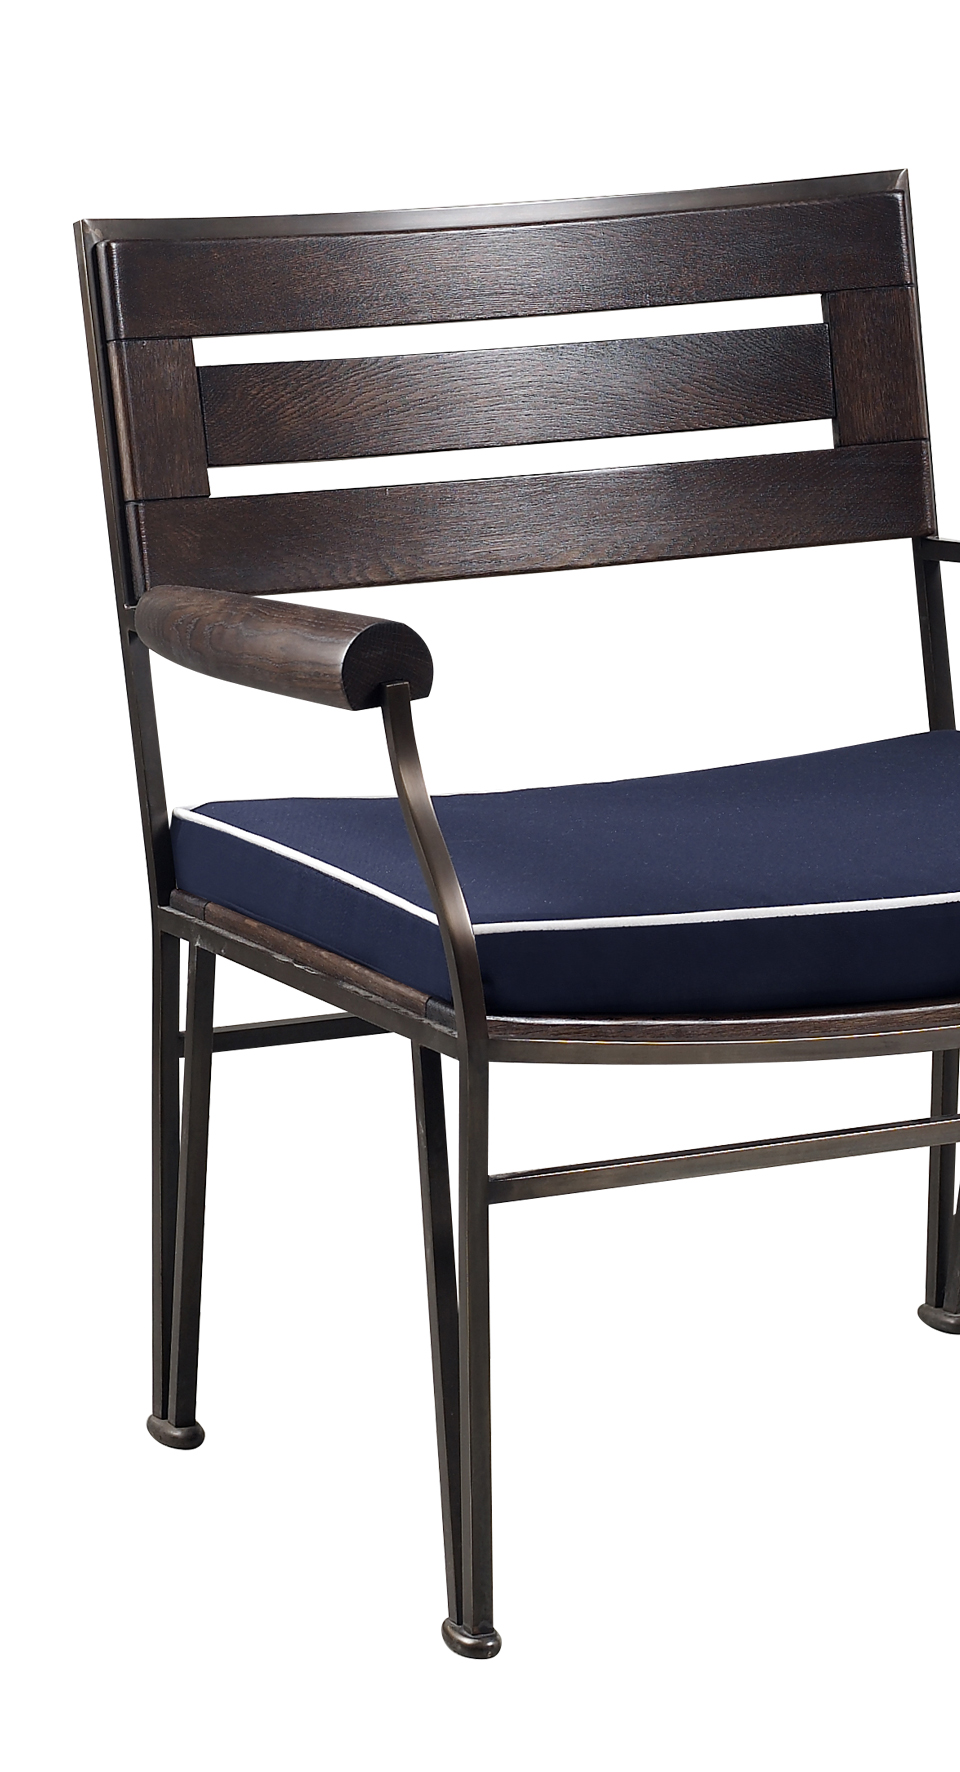 „Cernobbio“ ist ein Sessel und Fußhocker aus Holz und Bronze mit Stoff- oder Lederkissen, aus dem Outdoor-Katalog von Promemoria | Promemoria